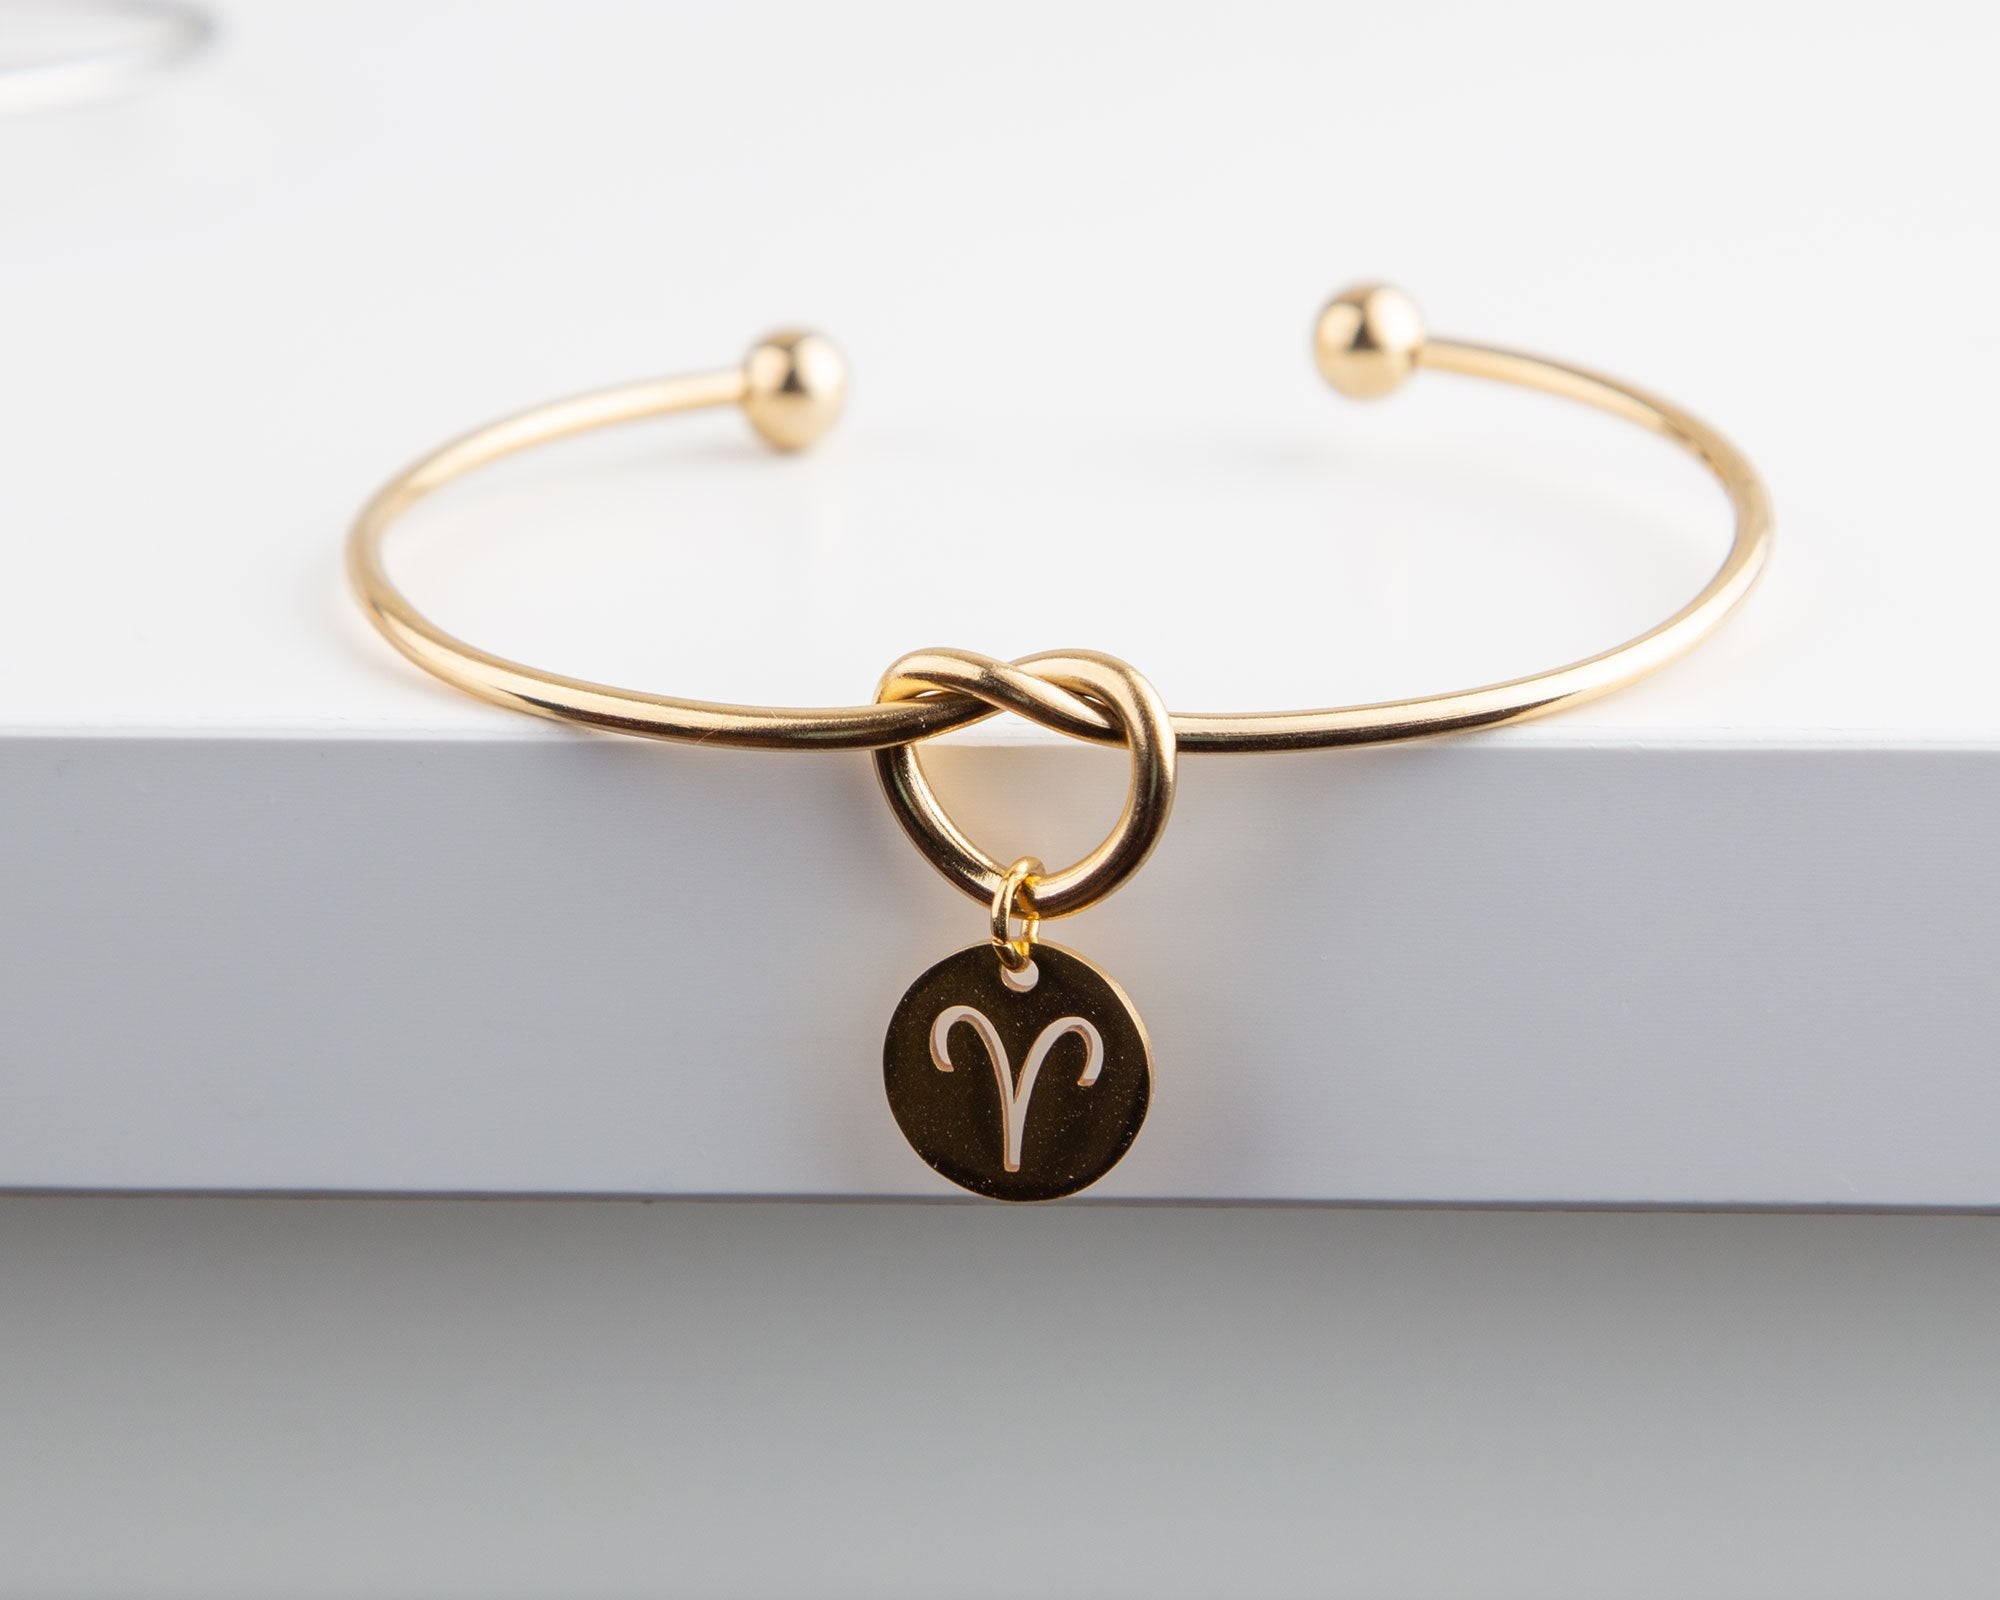 Gold Plated Knot Wire Bracelet with Zodiac Charm - Adjustable Size Bijou Her